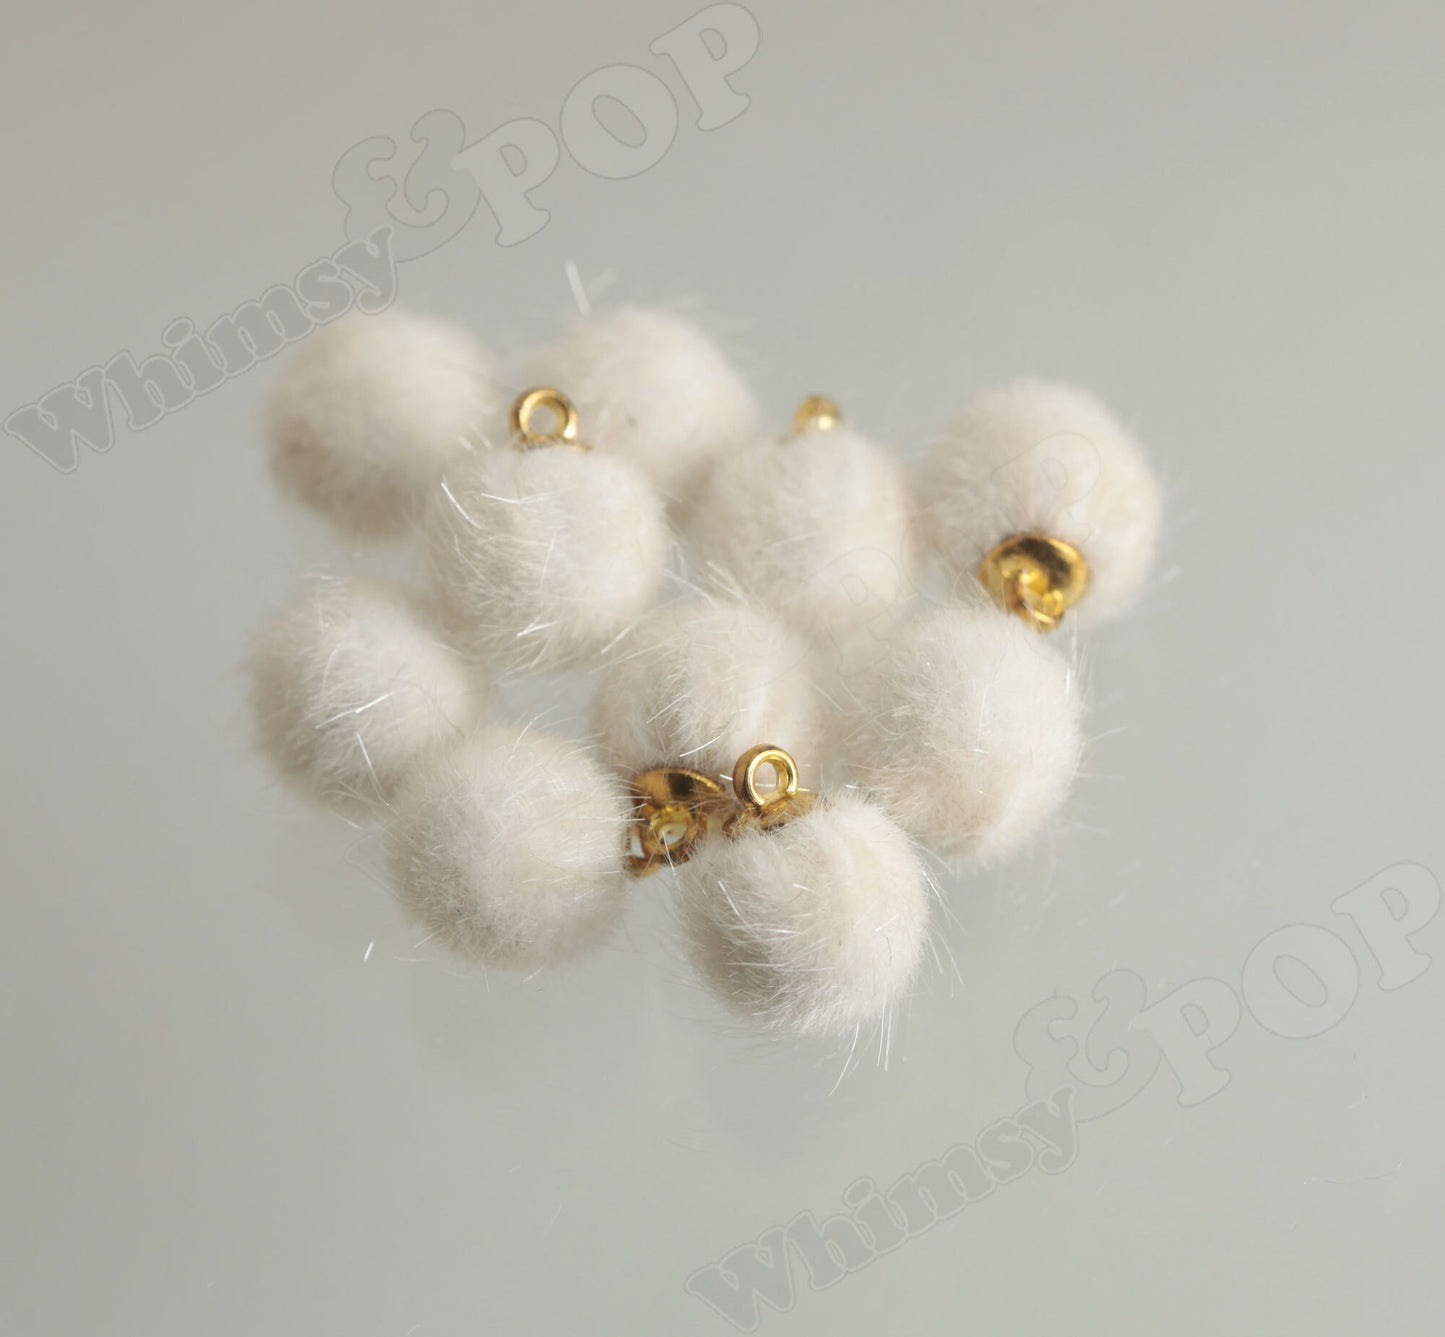 10 - Fuzzy Charm Gold Tone Mini Pom Pom Fur Ball Charms